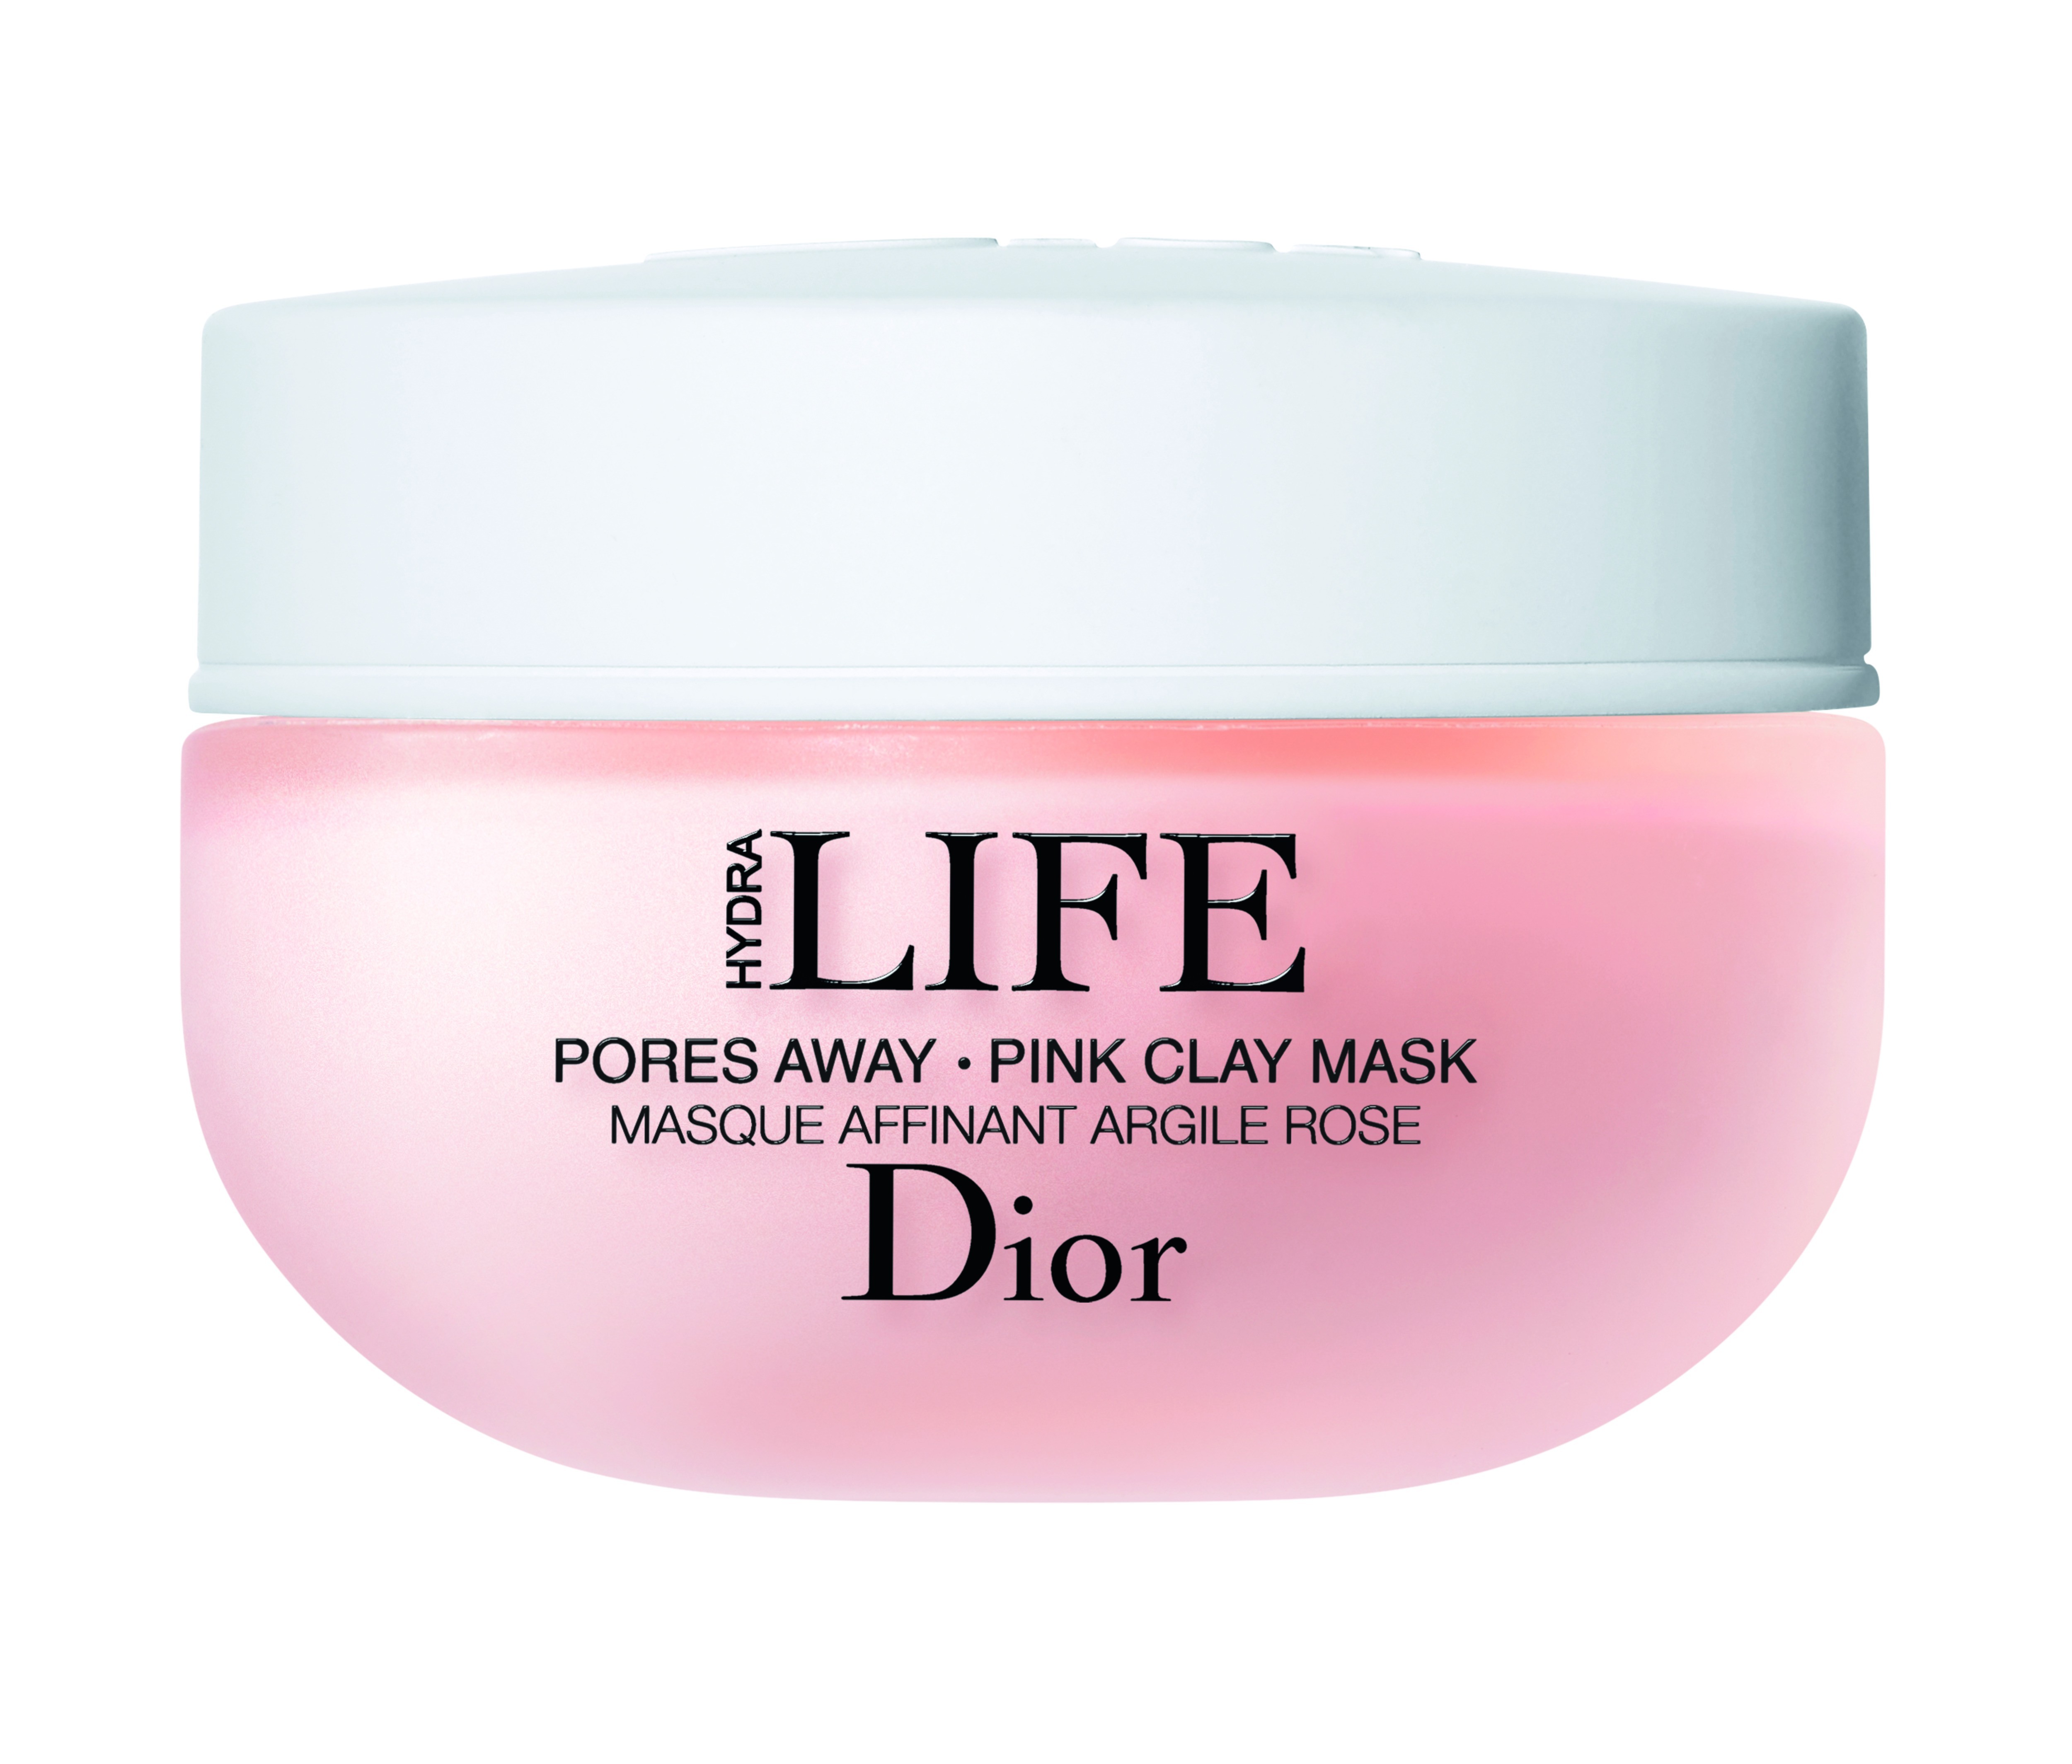 Pink Clay Mask Pores Away, Dior (Foto: Divulgação)